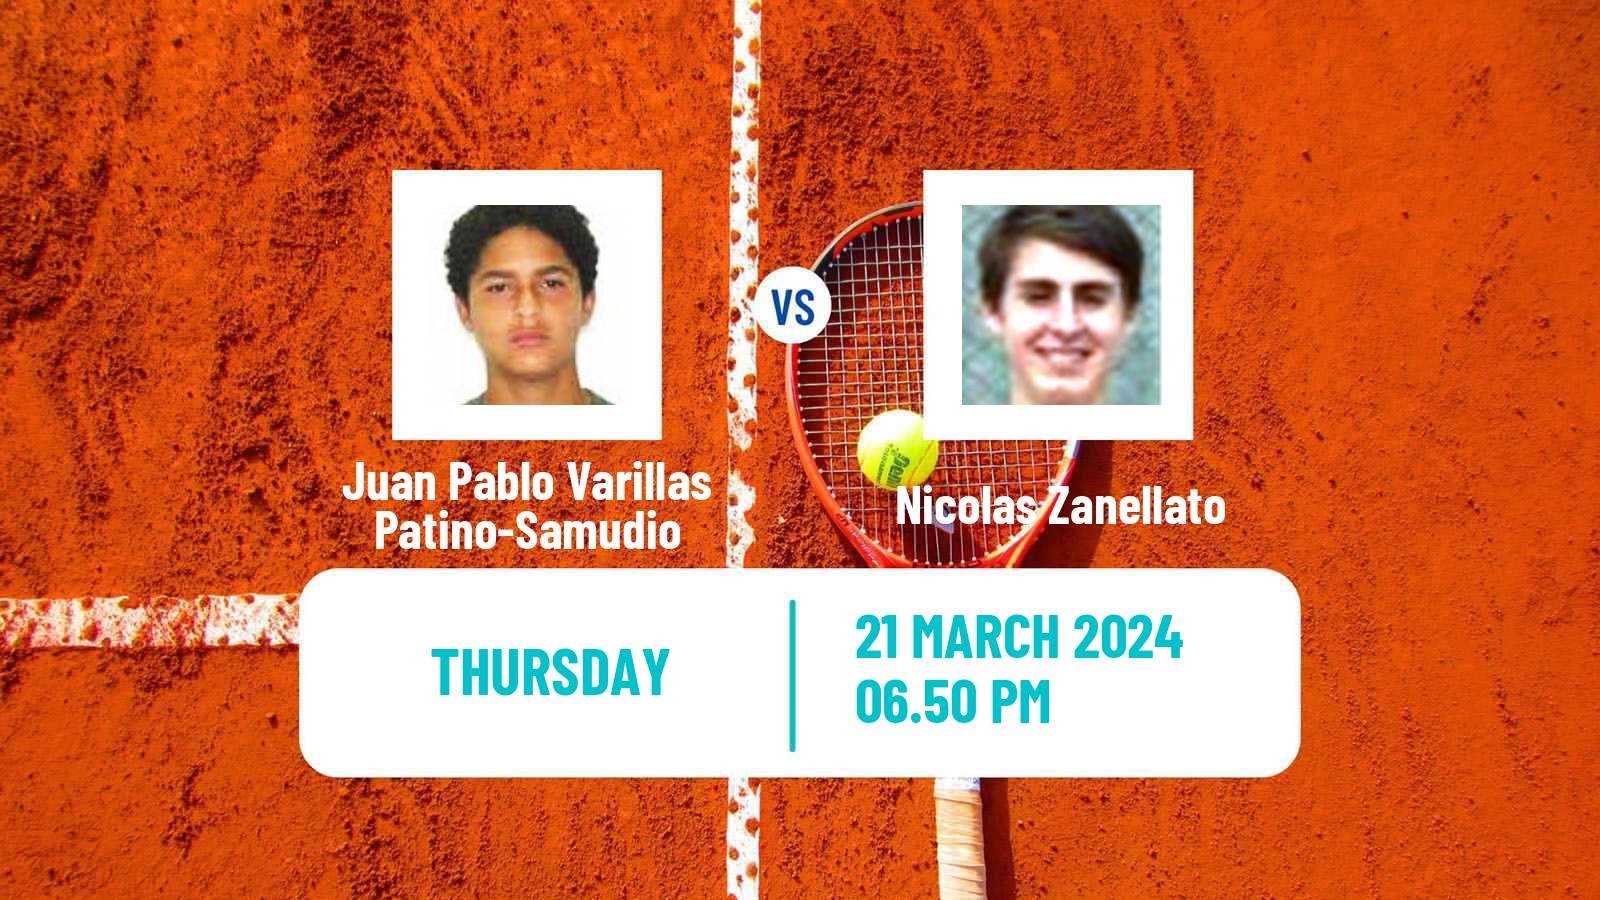 Tennis Asuncion Challenger Men Juan Pablo Varillas Patino-Samudio - Nicolas Zanellato